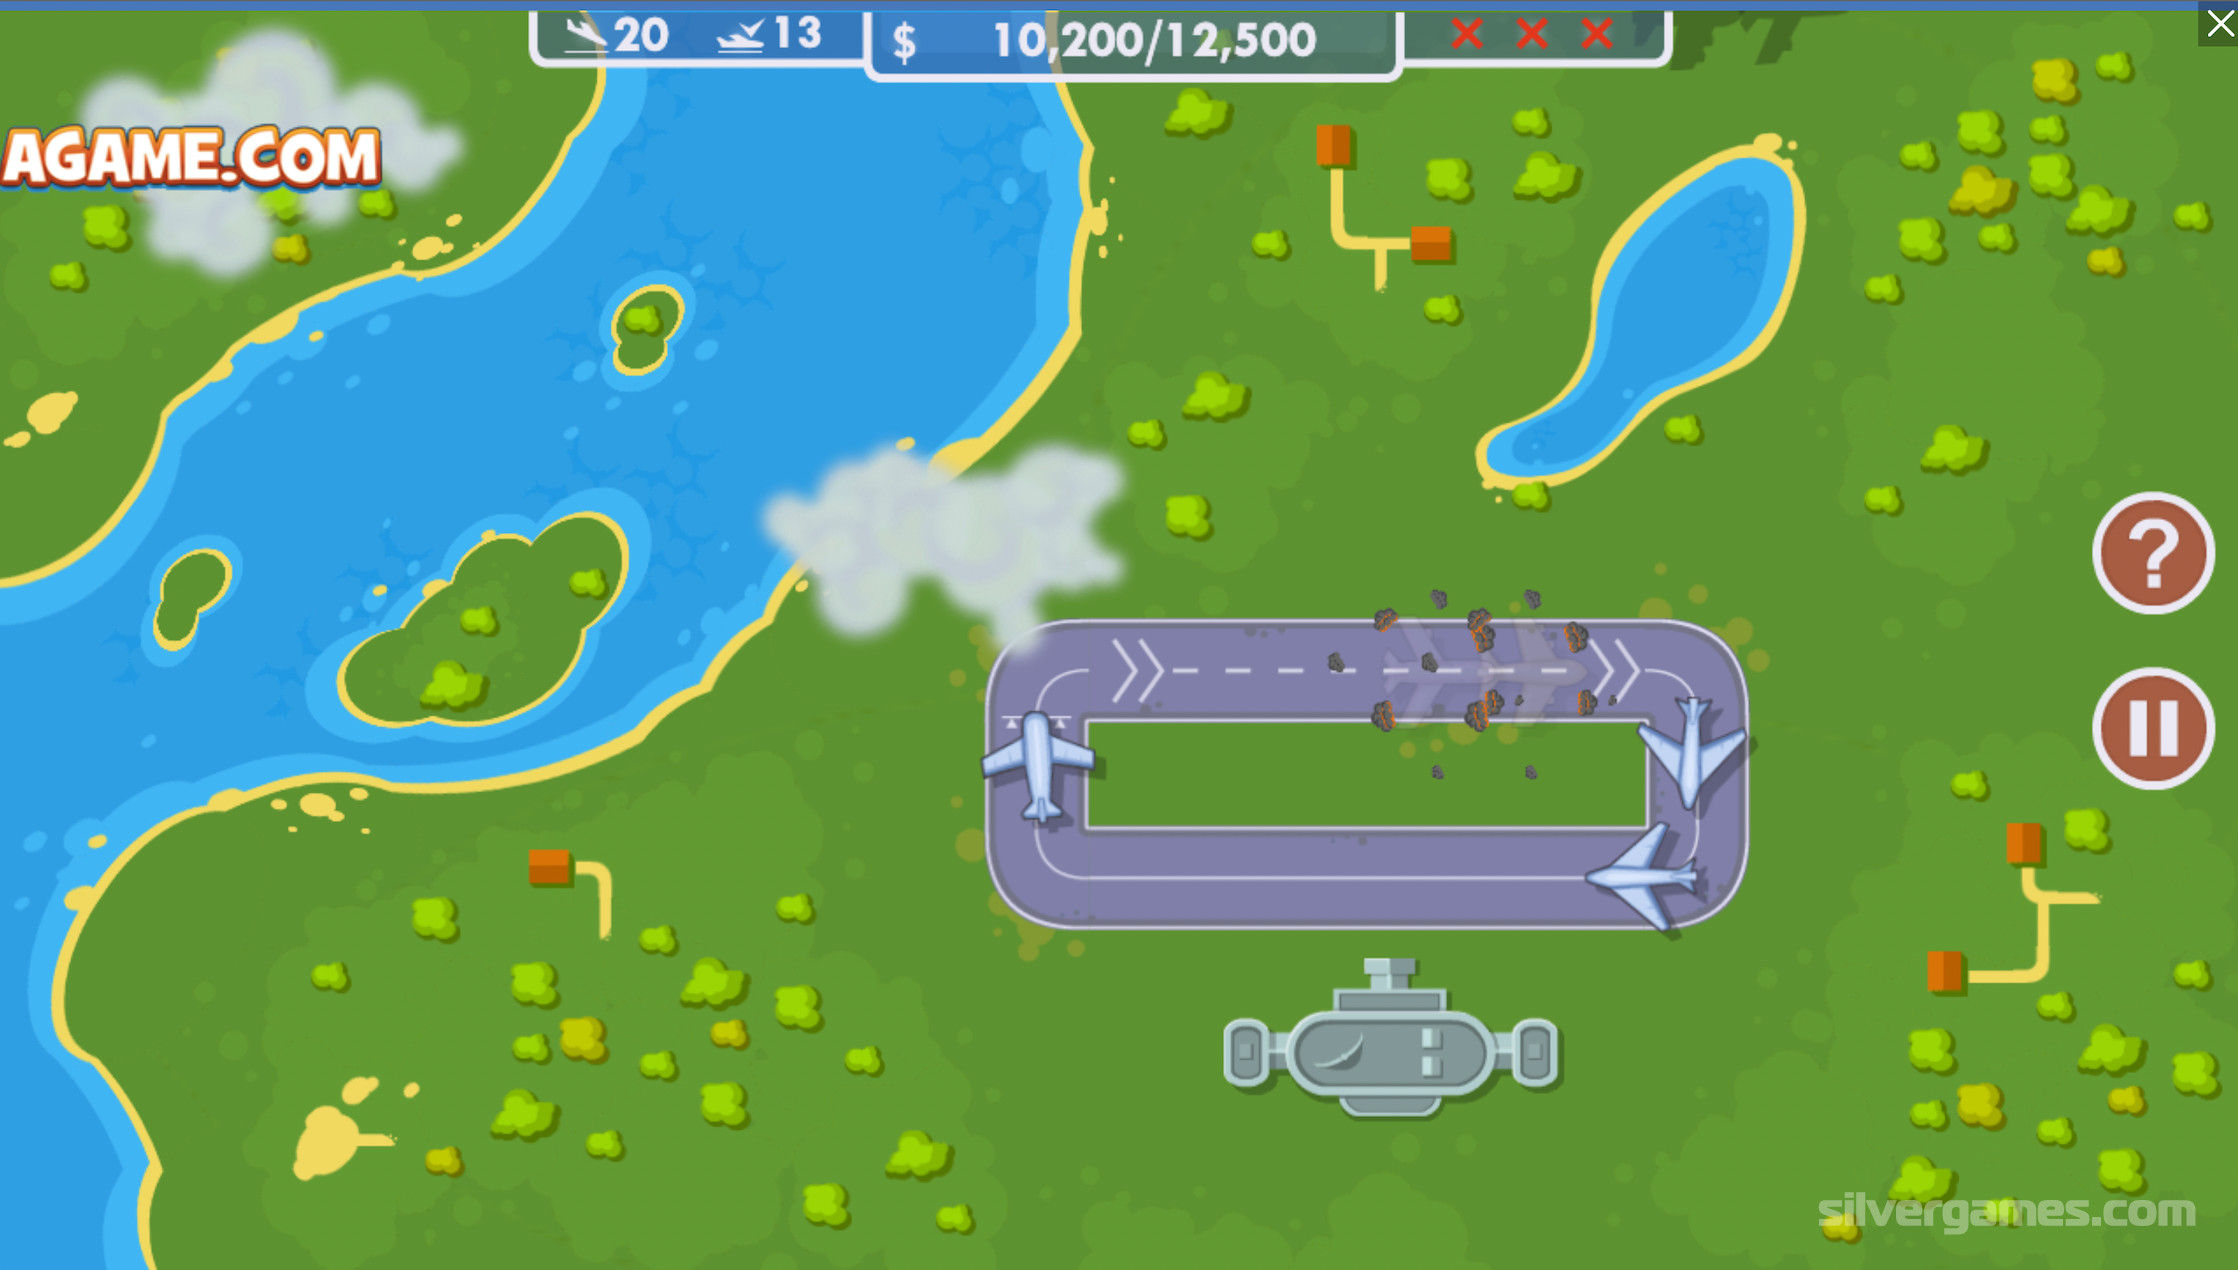 Controlador de tráfego aéreo - Jogue Online em SilverGames 🕹️